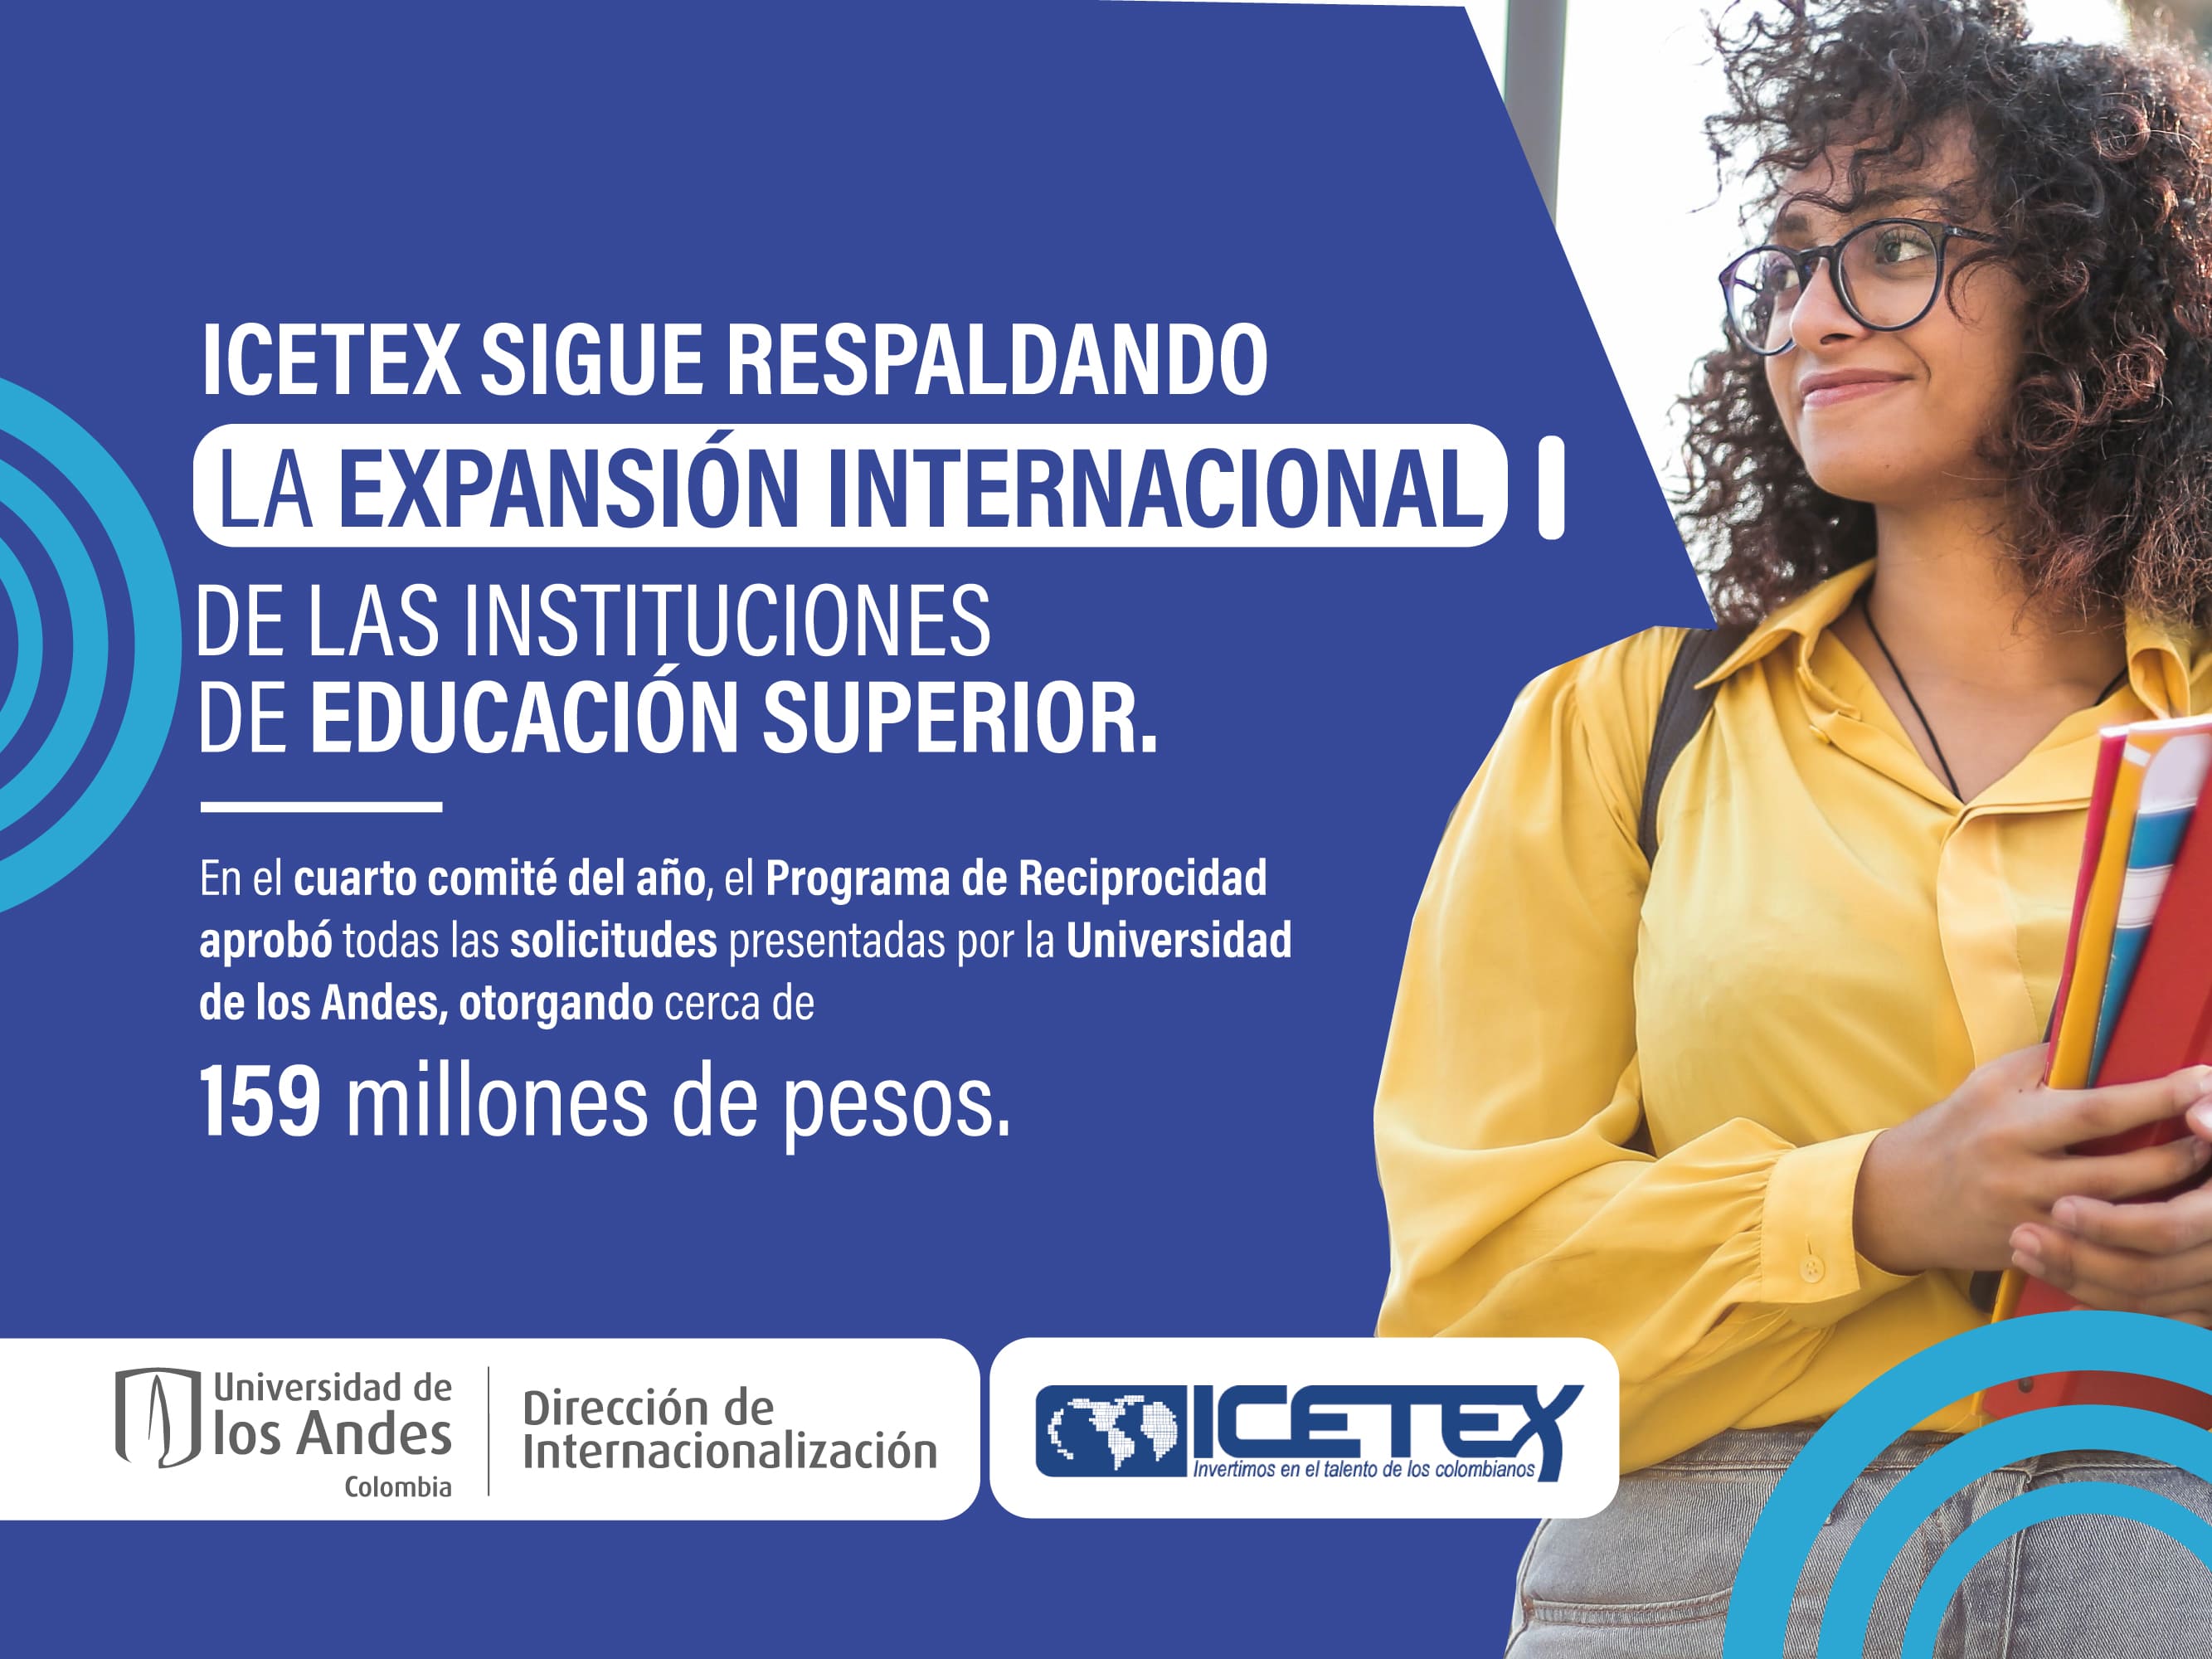 ICETEX y Uniandes, juntos por la internacionalización. 